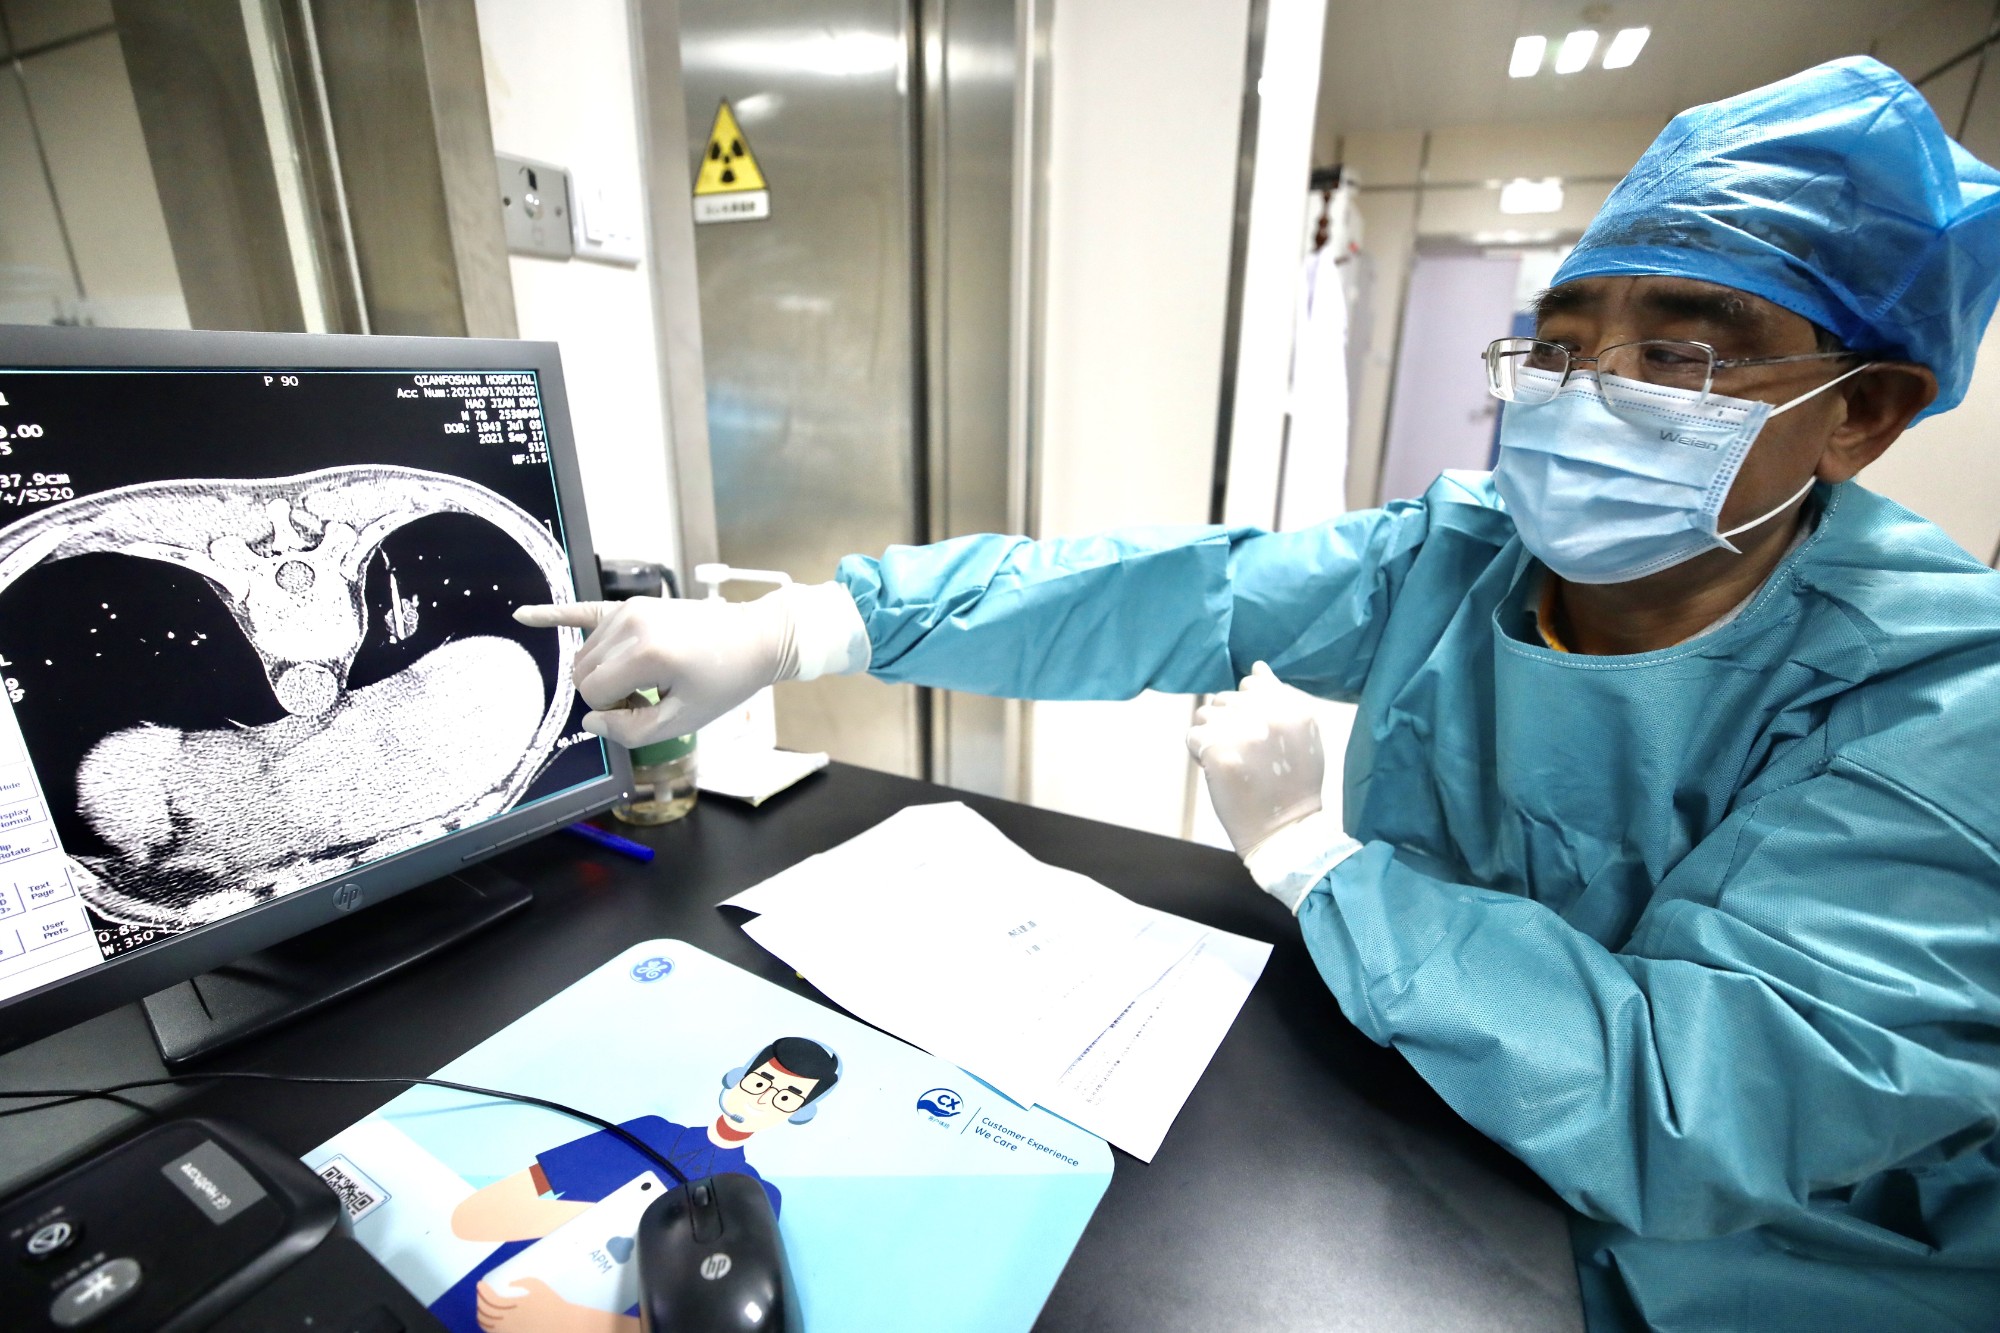 氬氦刀腫瘤冷凍治療術被納入山東省各市醫保首日 有個腫瘤“凍死”了